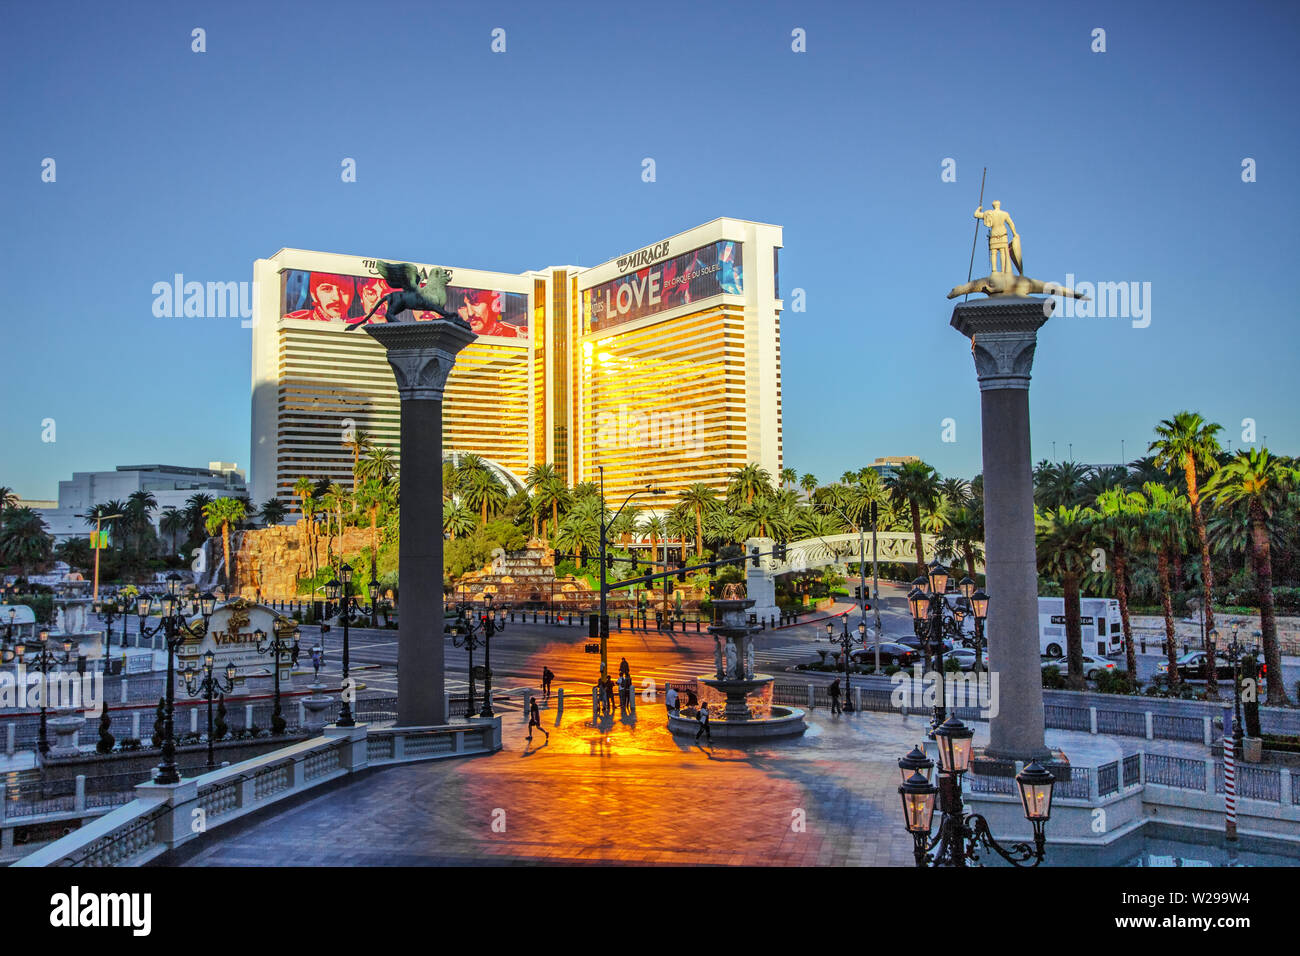 Las Vegas, Nevada, EE.UU. - el 6 de mayo de 2019: Los turistas cruzar una calle muy transitada en el Las Vegas Boulevard al amanecer con el Mirage Resort y Casino. Foto de stock